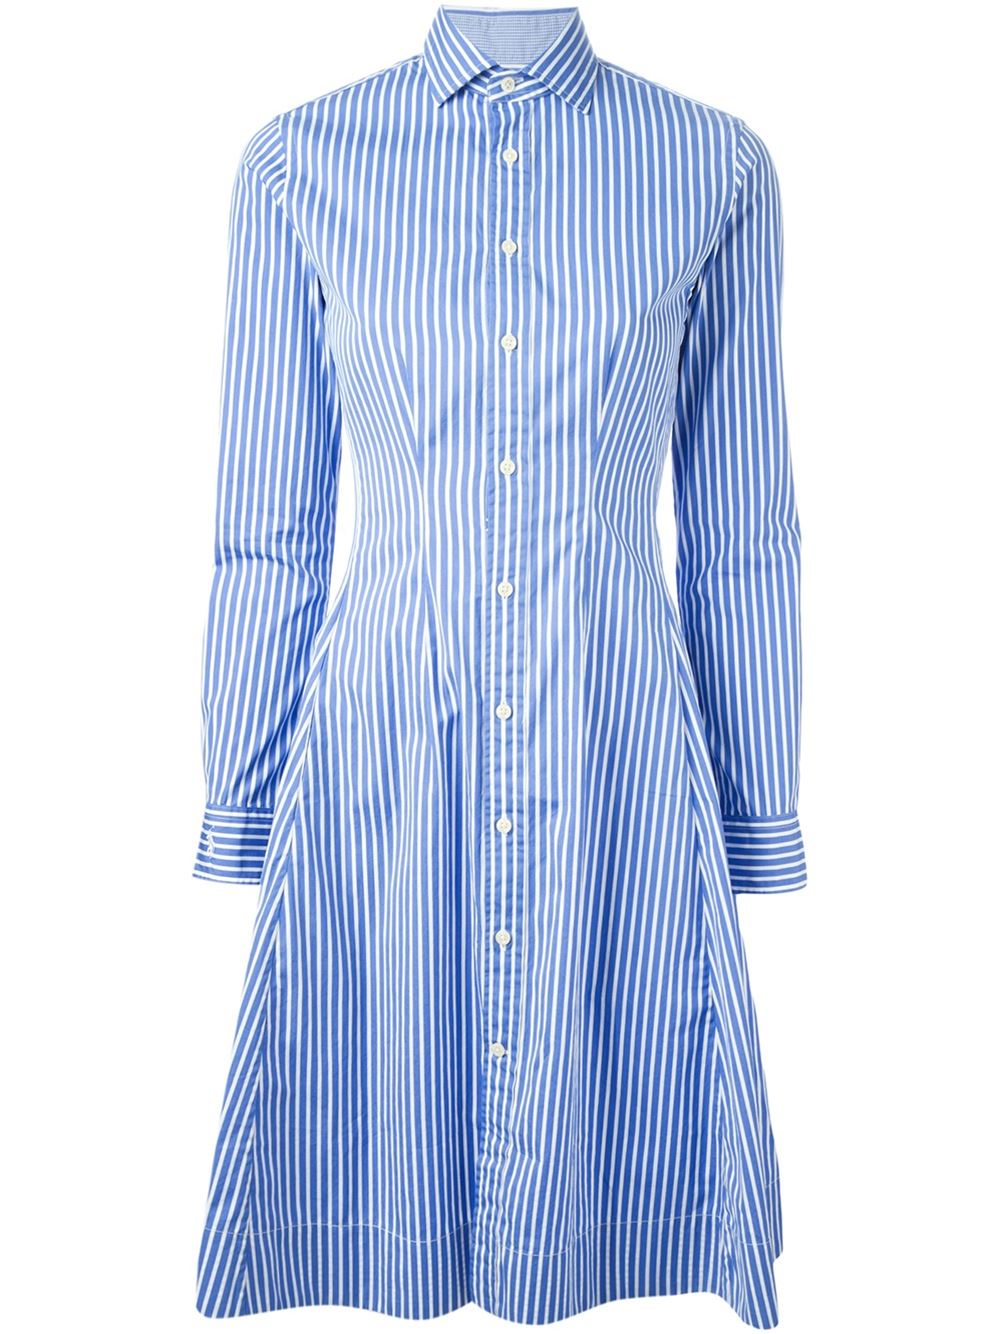 Lyst - Polo Ralph Lauren Striped Shift Dress in Blue